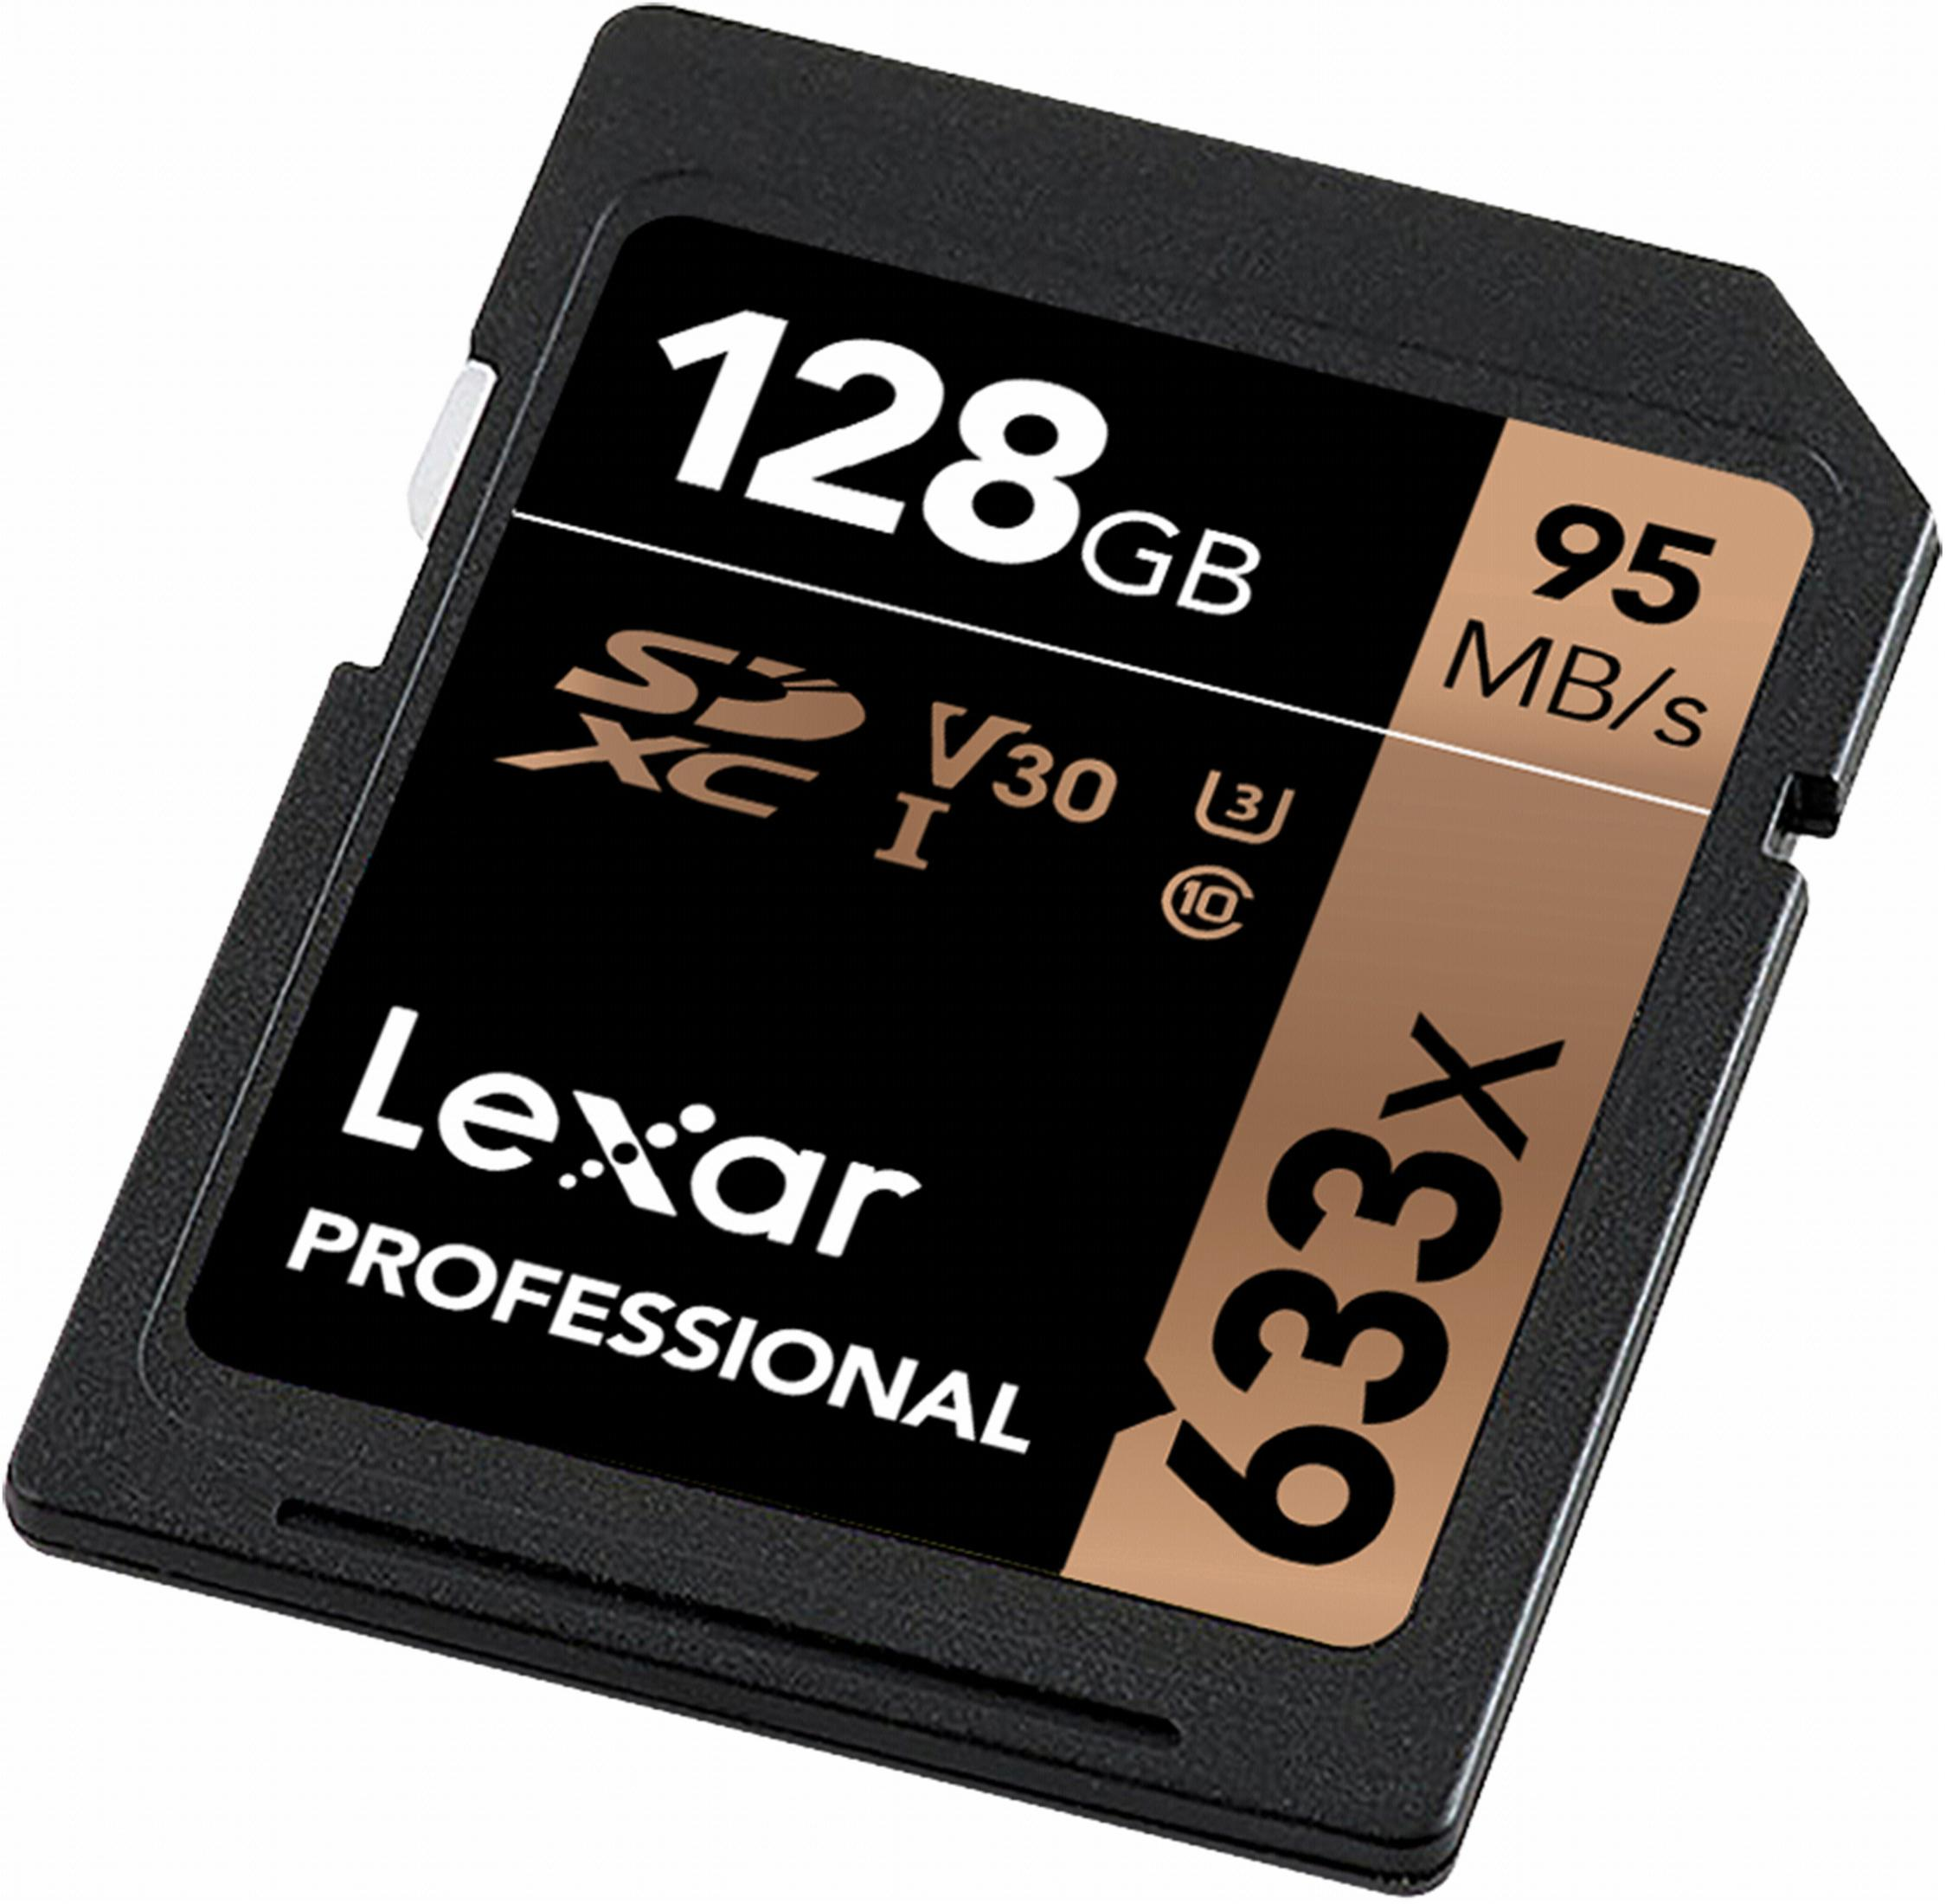 UHS-I SDXC Speicherkarte, MB/s 95 128GB GB, LEXAR CARDS, SDXC 128 LSD128CB633